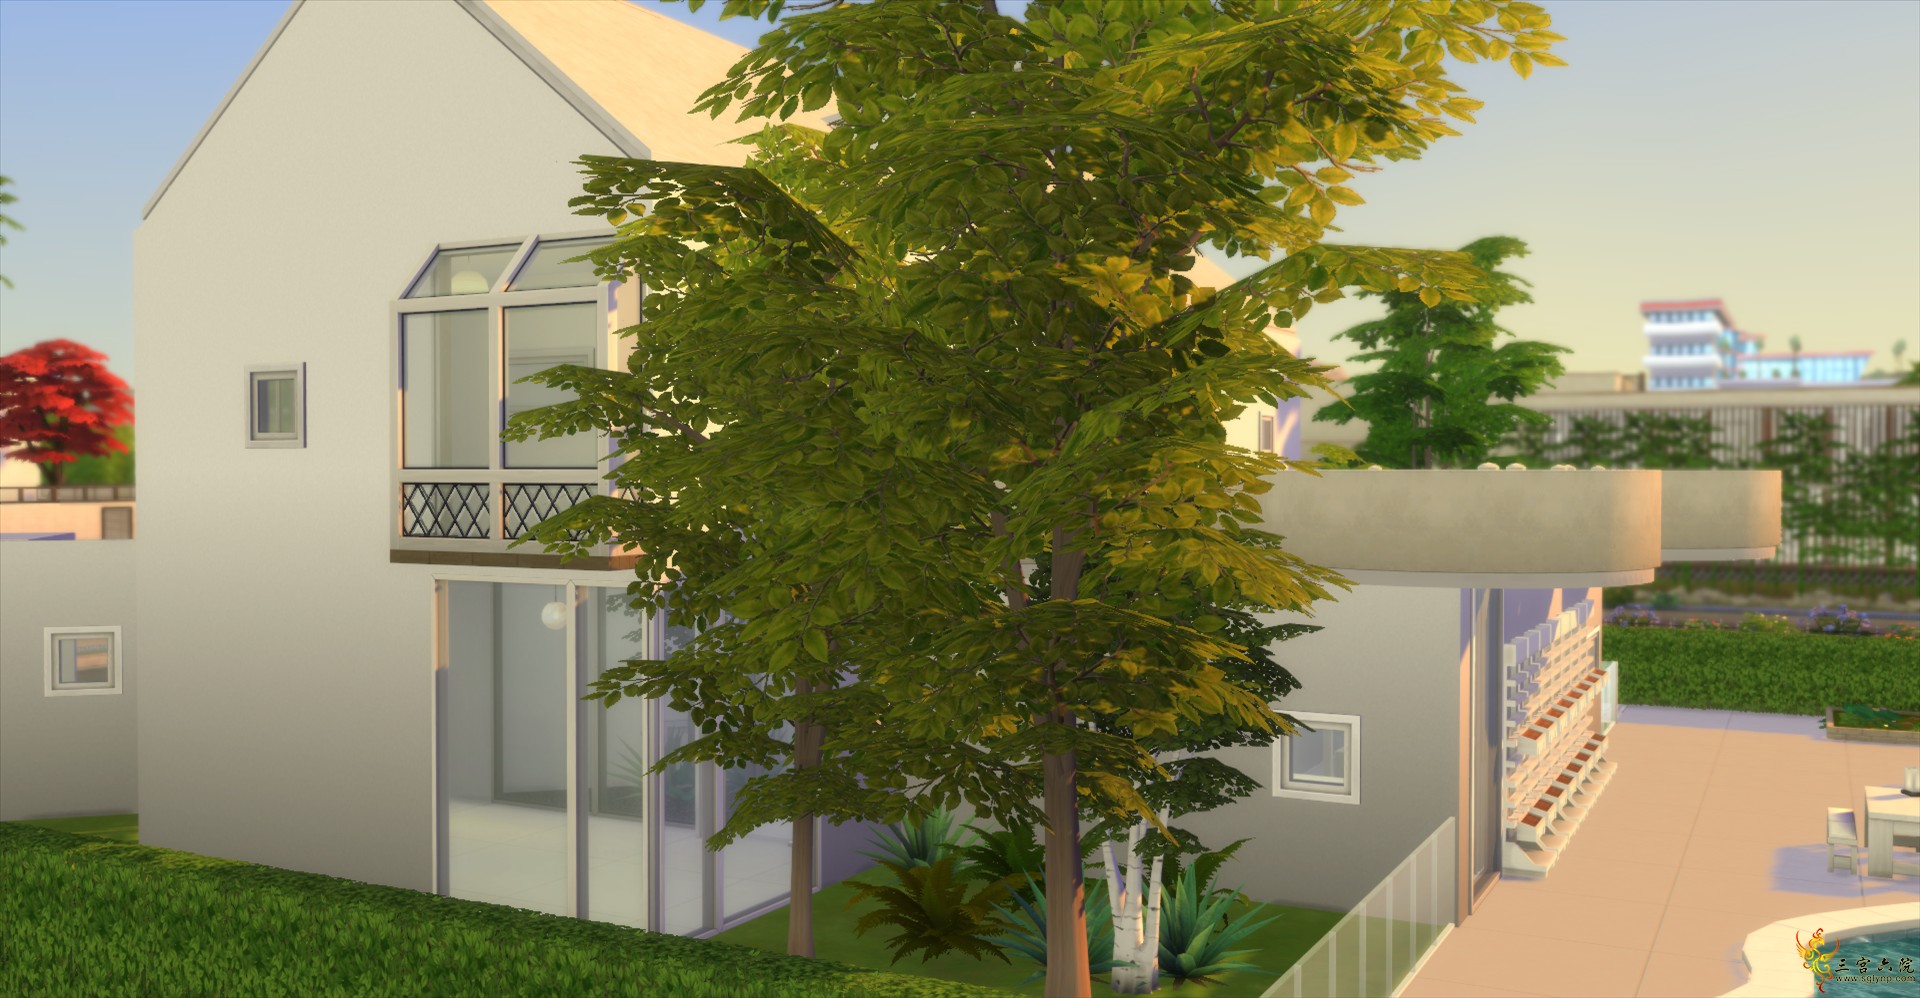 Sims 4 Screenshot 2021.06.30 - 14.35.37.83.png